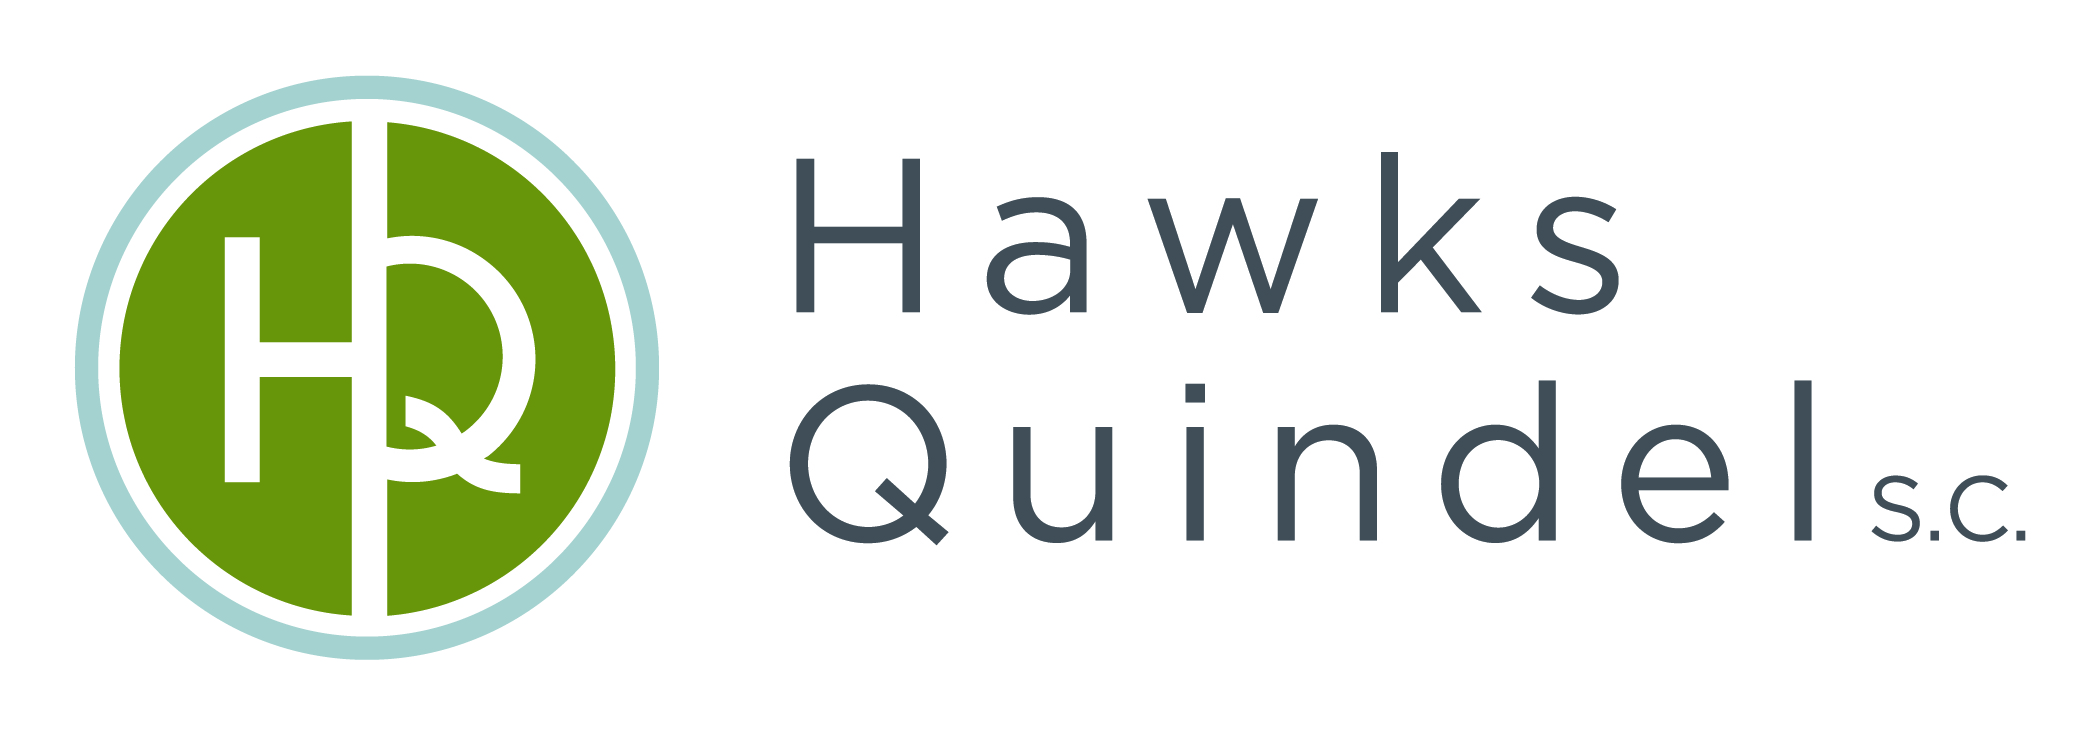 Hawks Quindel